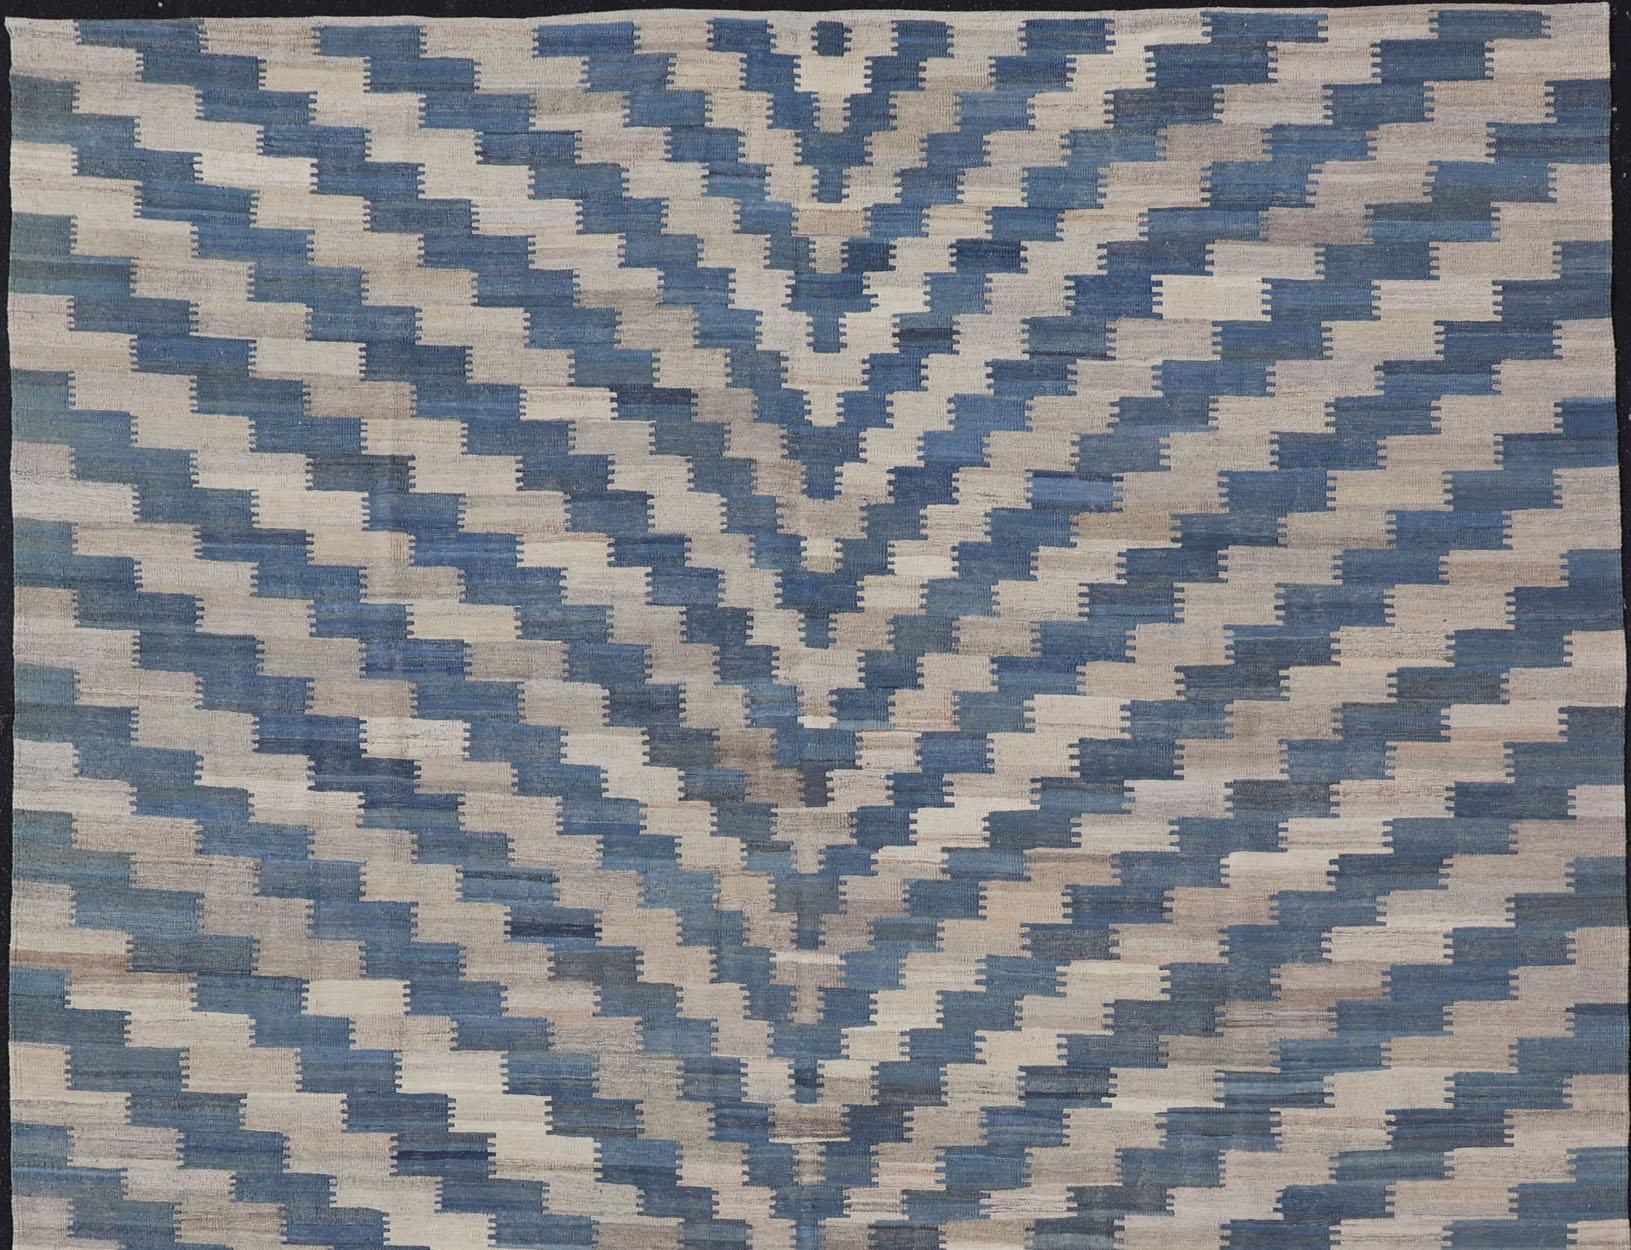 Tapis Kilim moderne à tissage plat avec des rayures dans les tons de bleu clair, bleu et crème, Keivan Woven Arts / tapis AFG-88, pays d'origine / type : Afghanistan / Kilim

Ce tapis Kilim tissé à plat présente un design moderne qui s'intègre